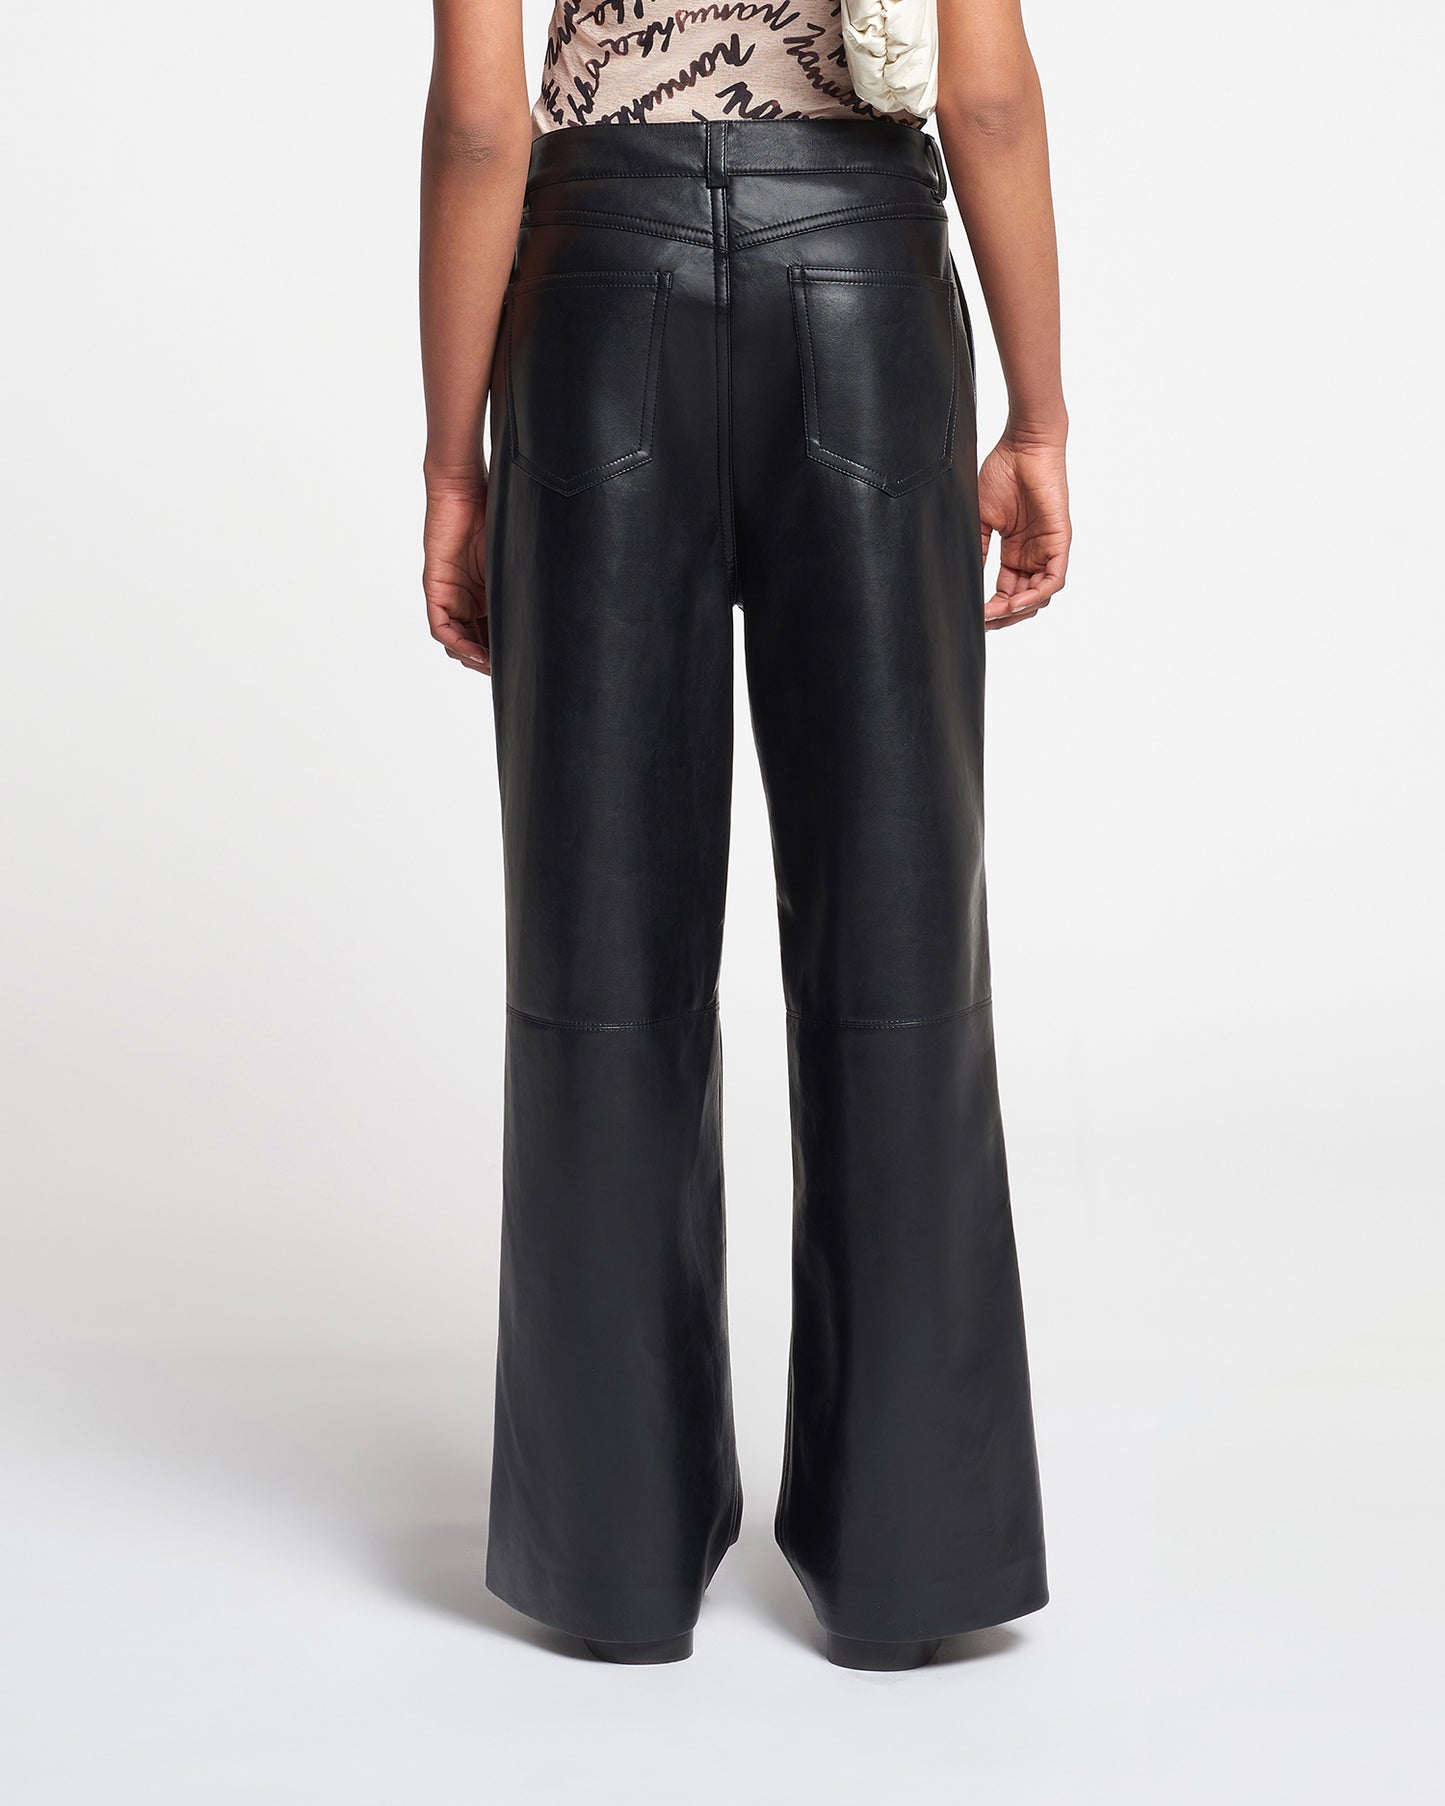 Vidia - Regenerated Leather Straight-Leg Pants - Black